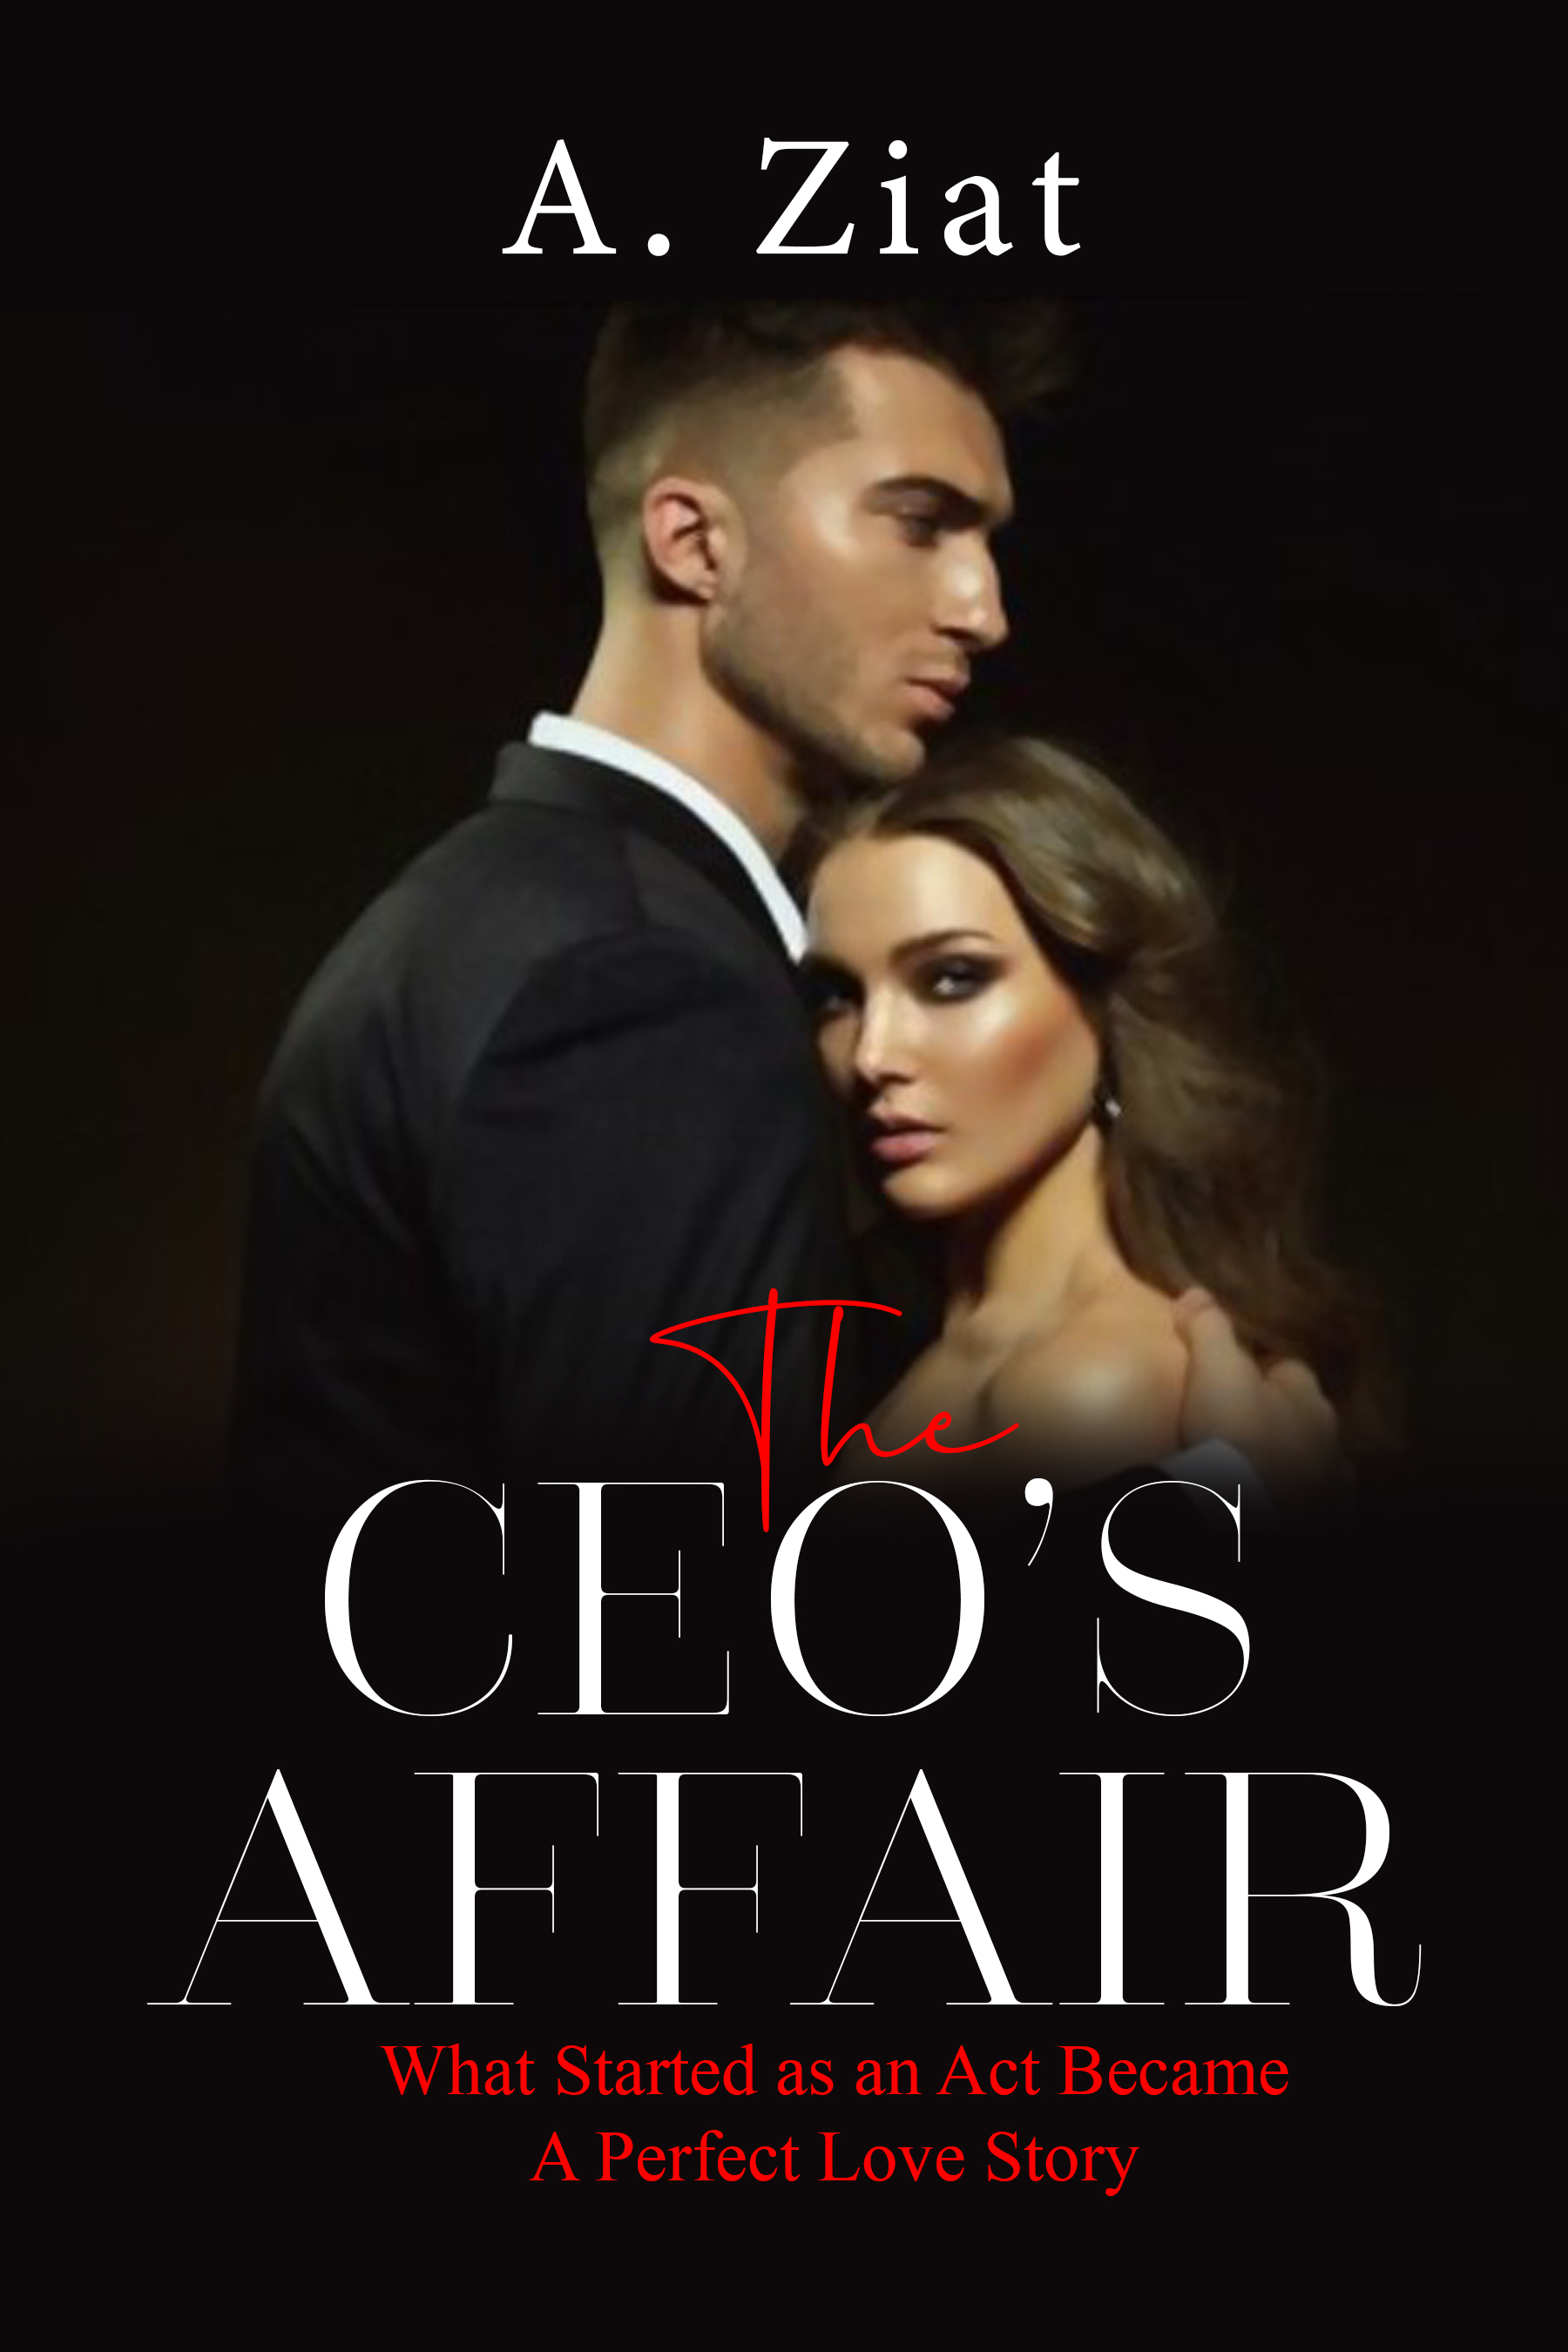 The-CEO's-Affair